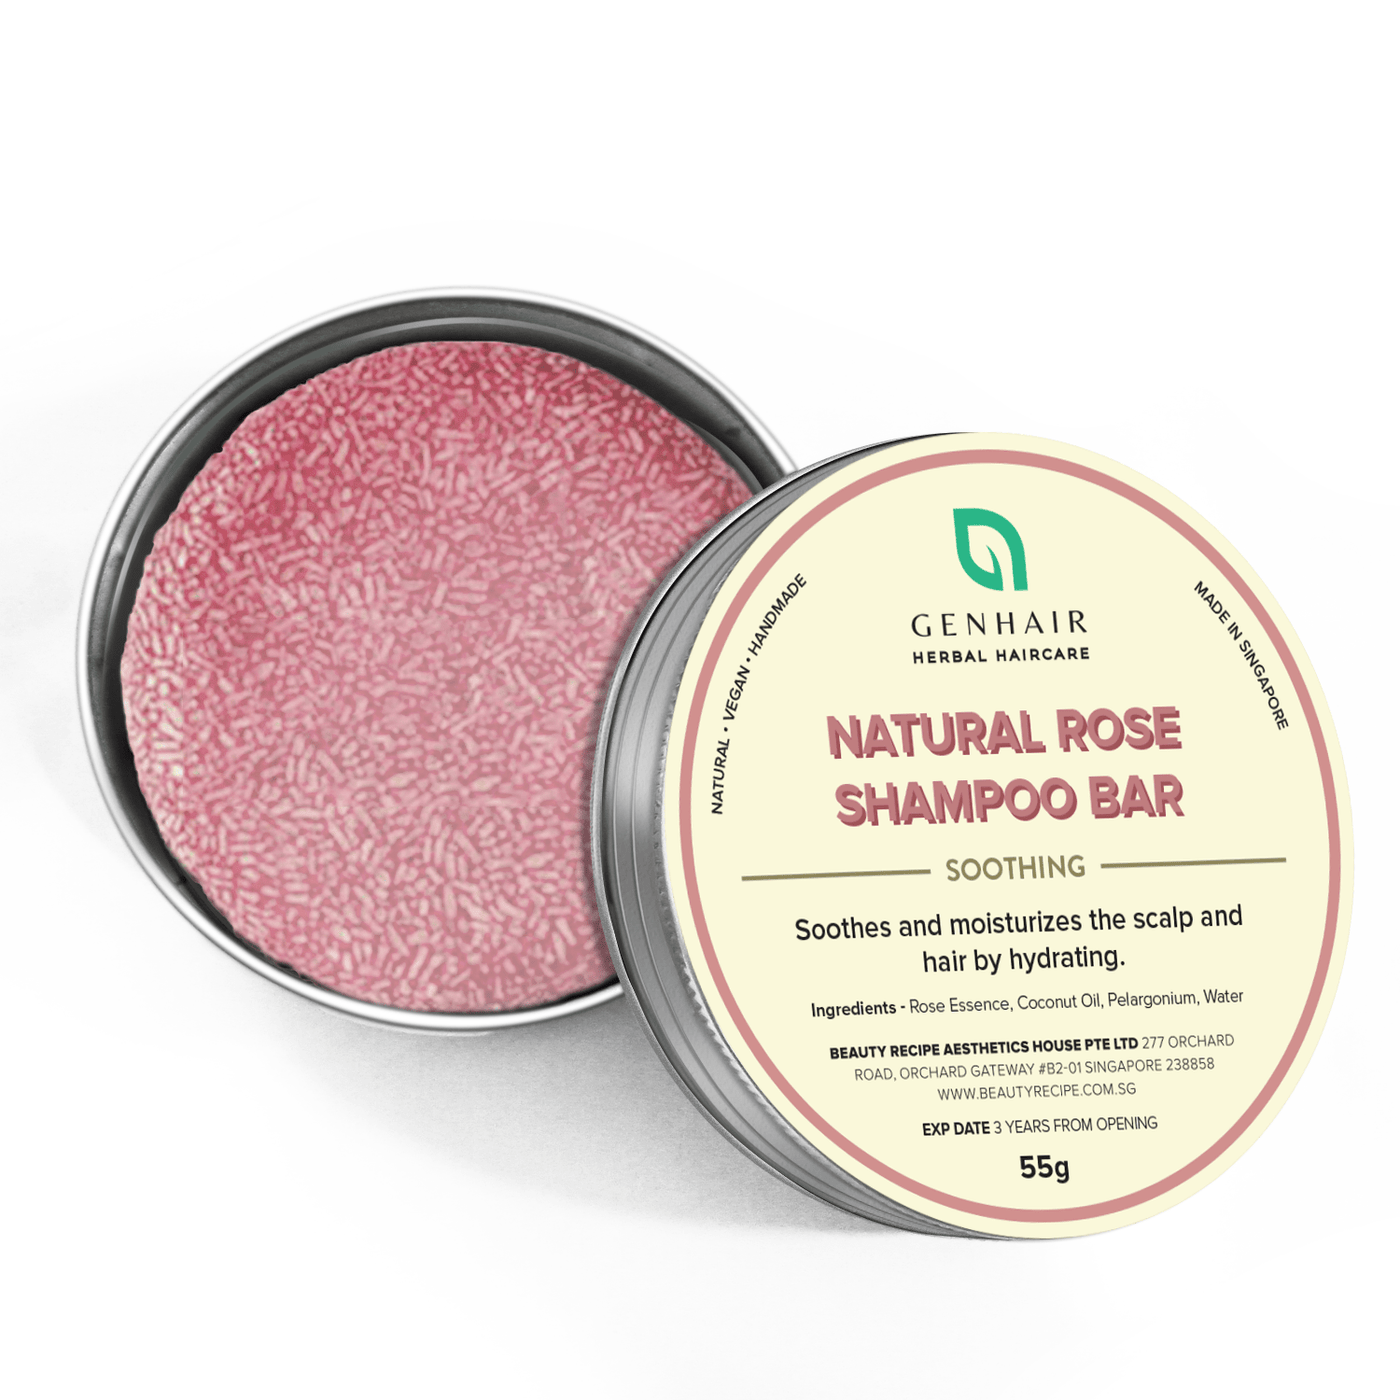 Natural Rose Shampoo Bar - Soothing